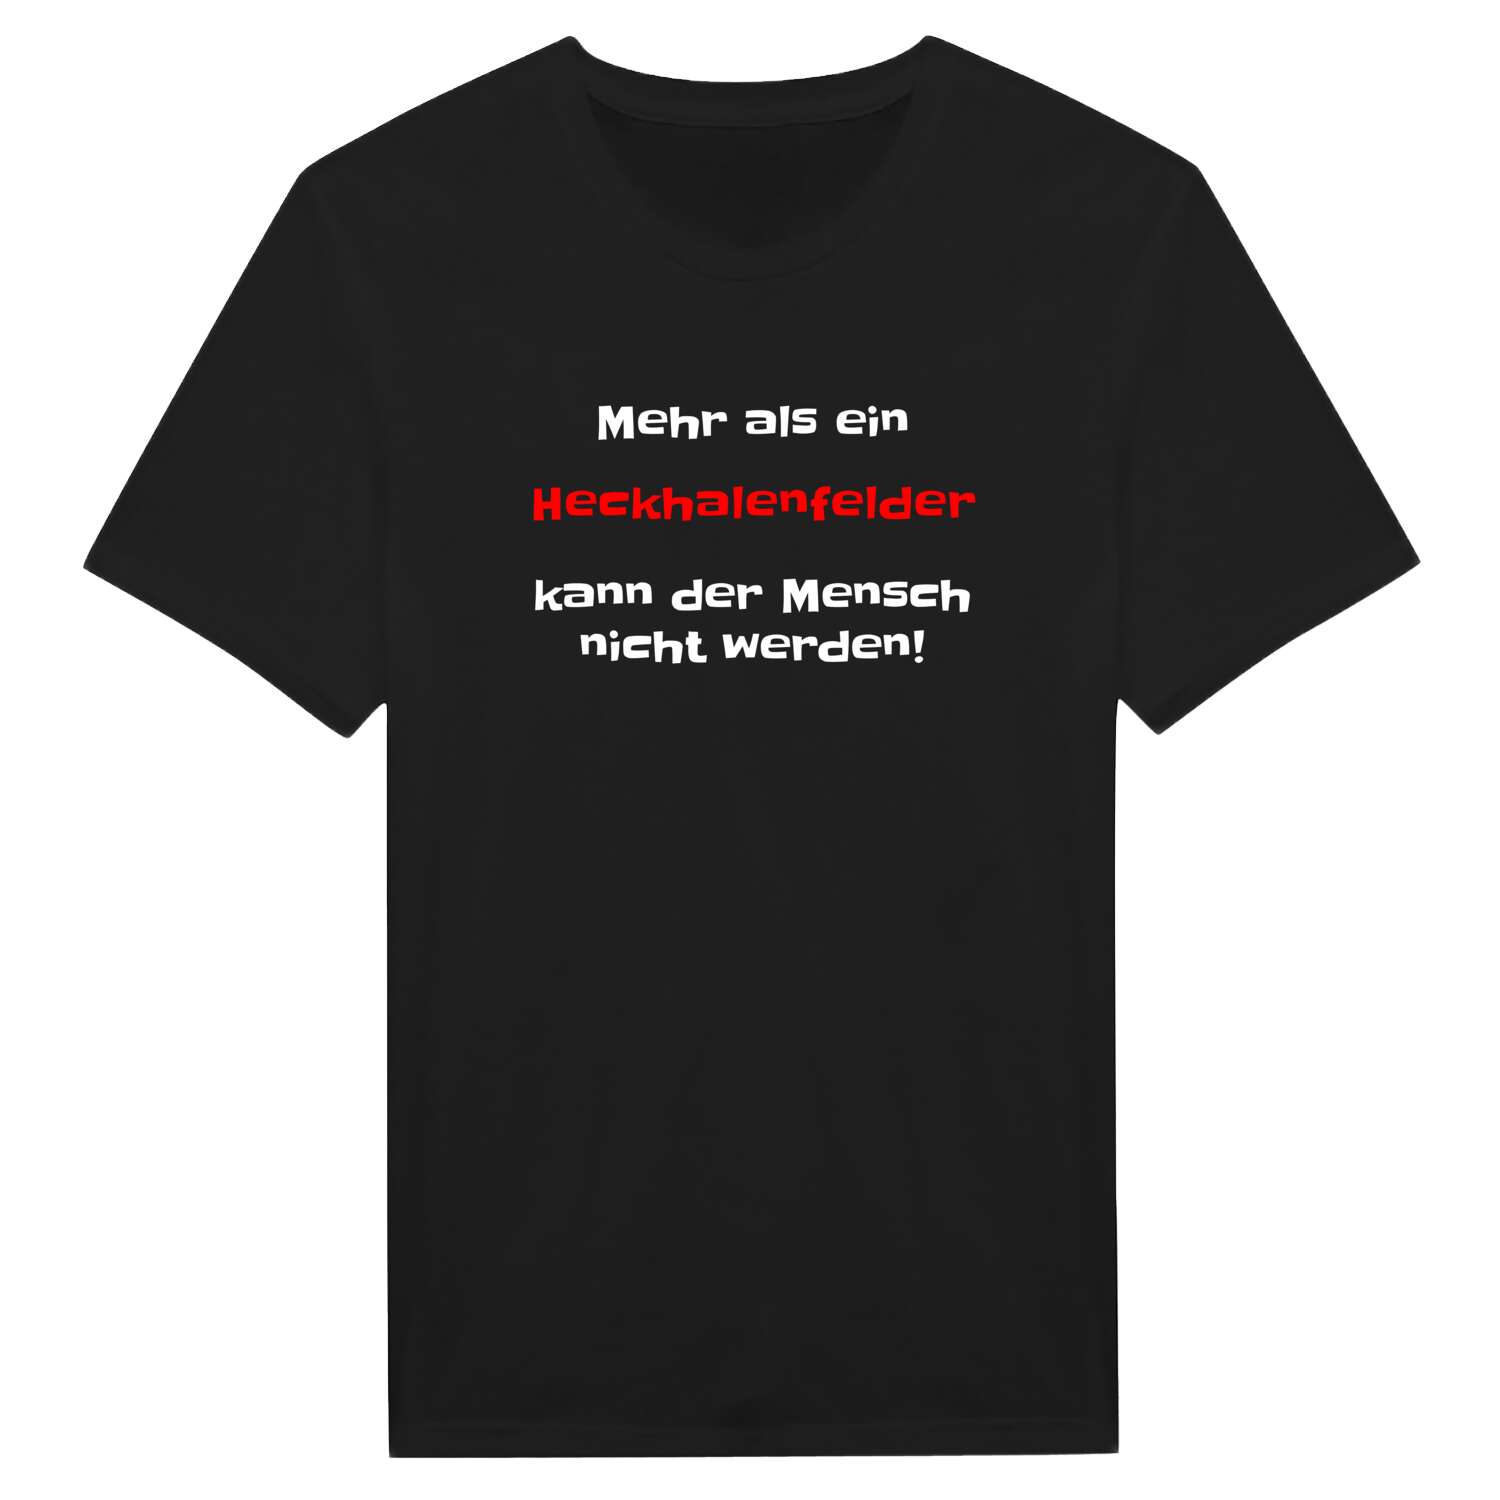 Heckhalenfeld T-Shirt »Mehr als ein«